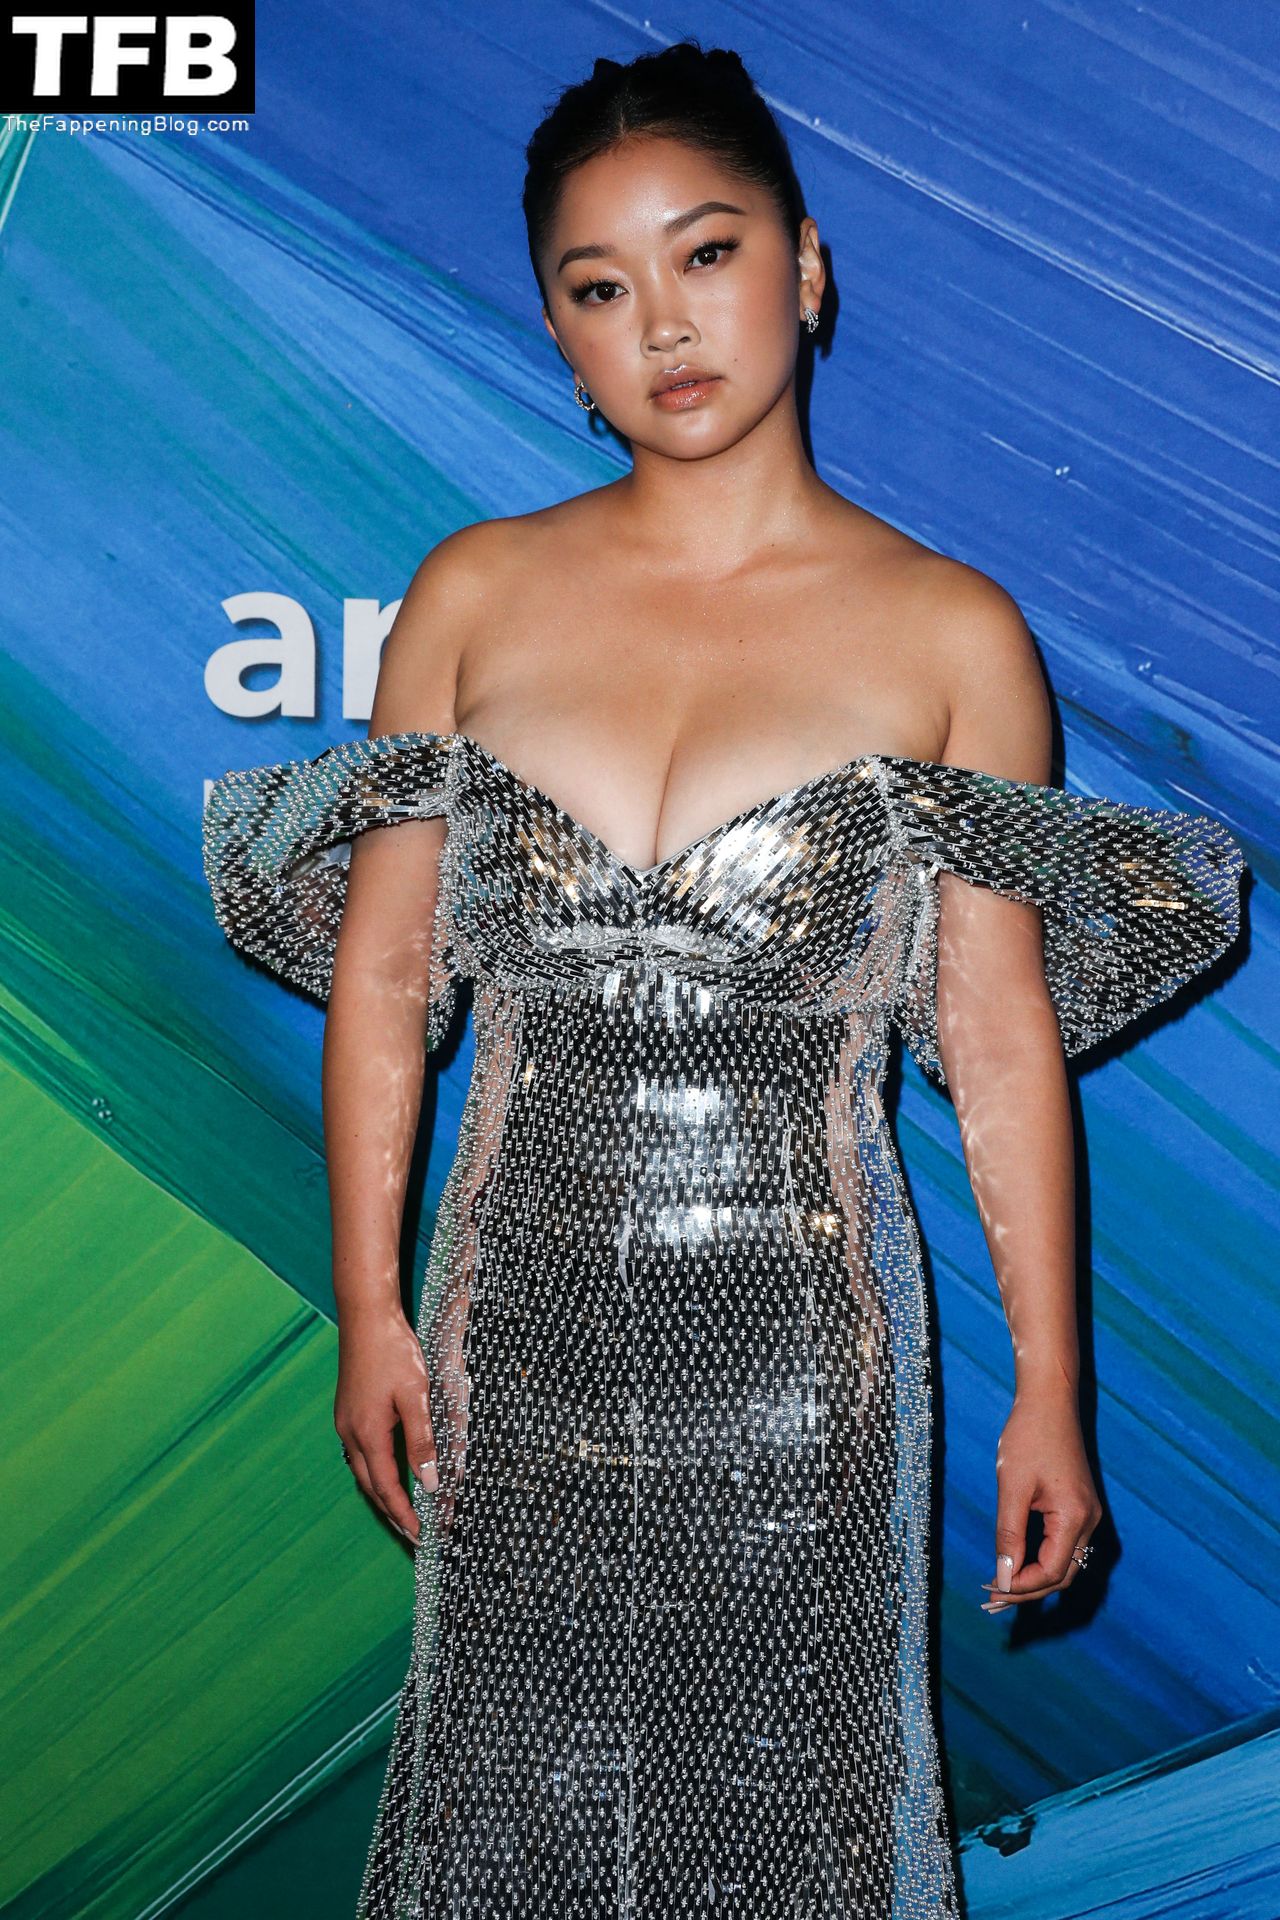 Lana Condor Displays Her Sexy Big Boobs at the amfAR Gala (115 Photos)